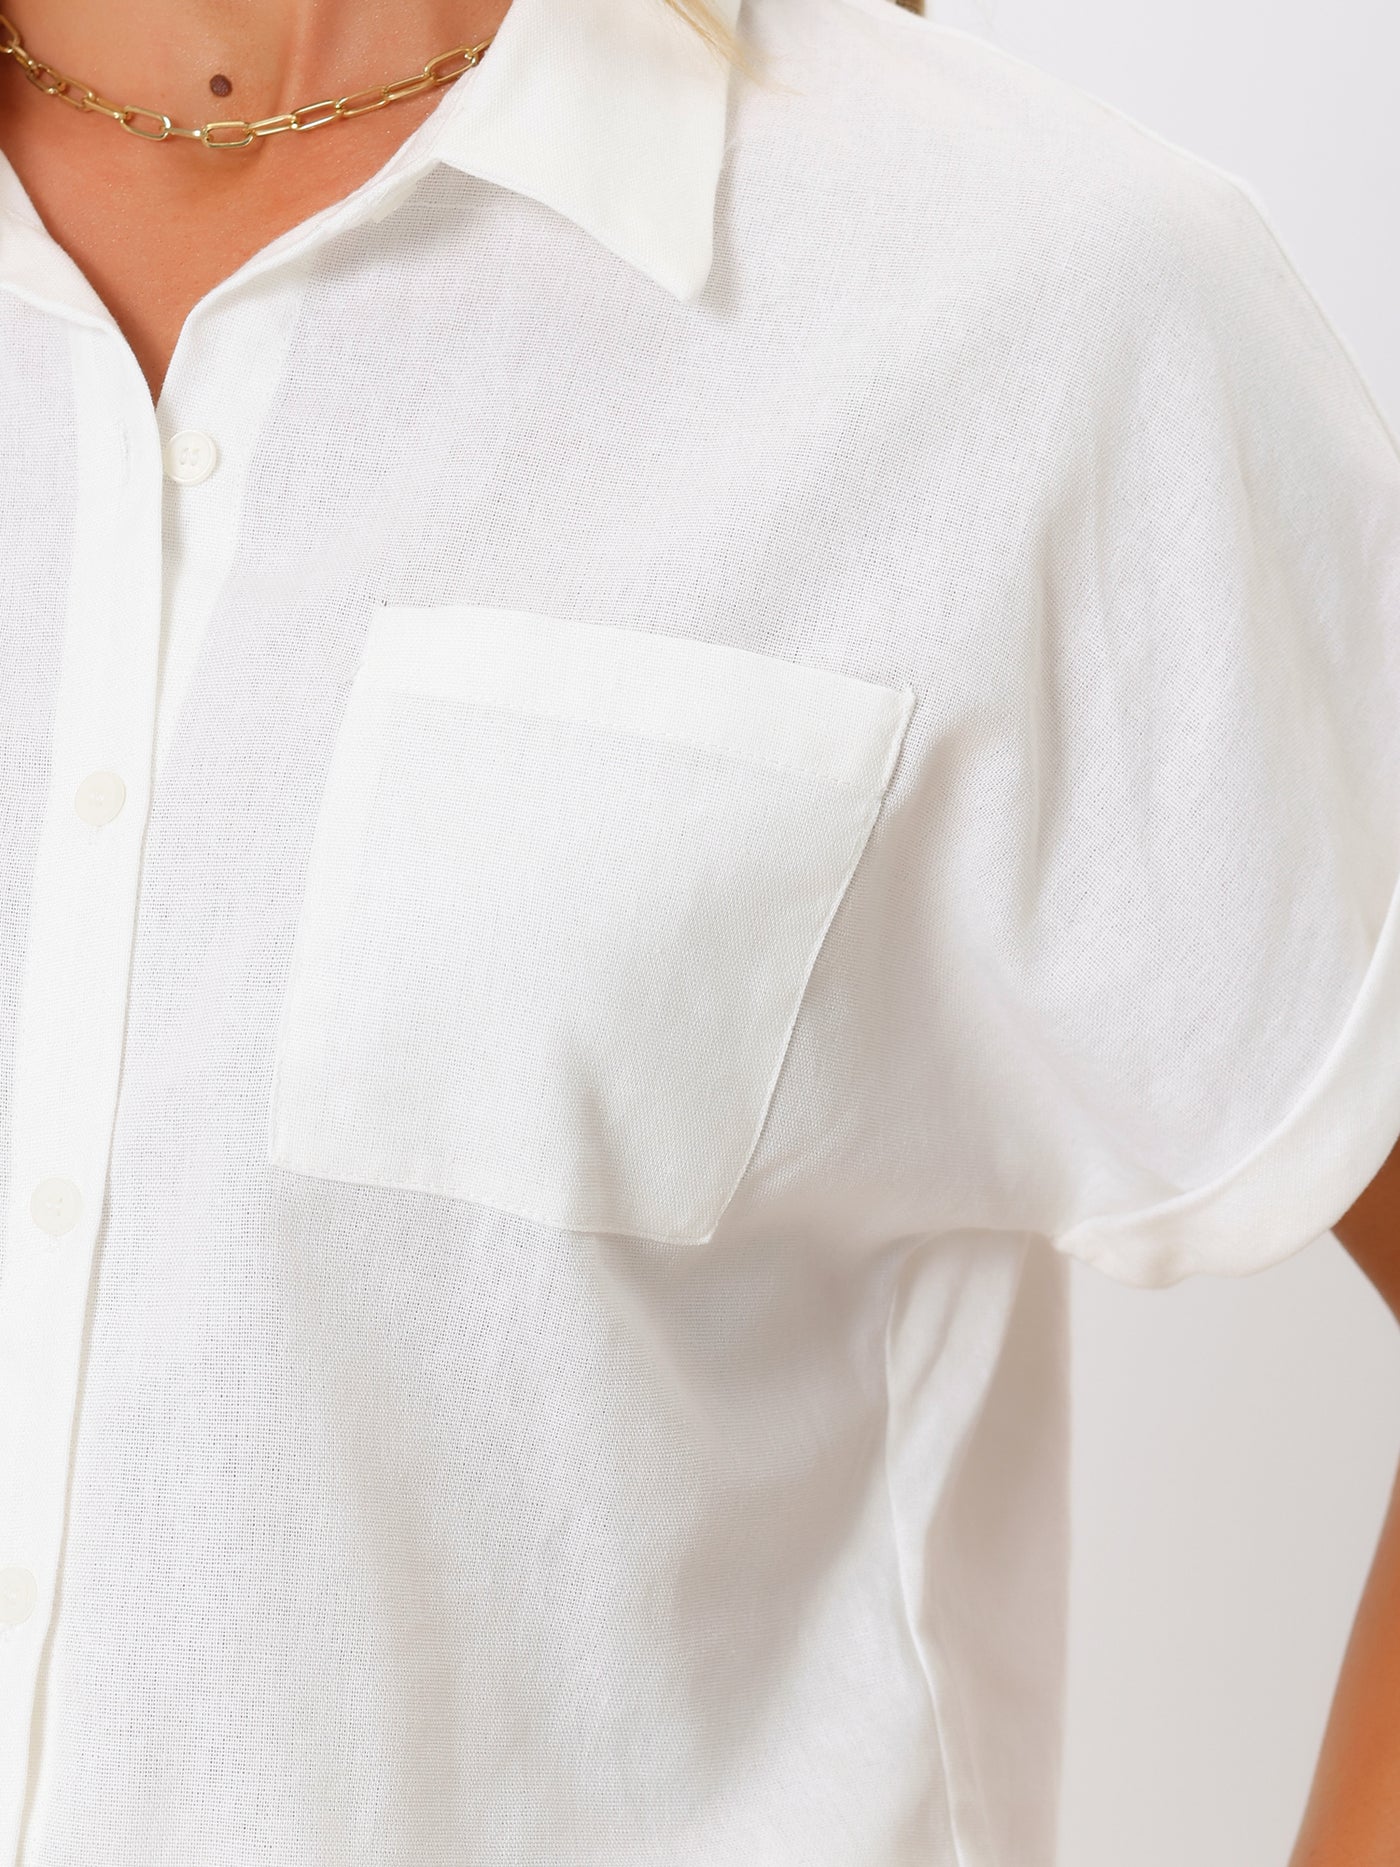 Allegra K Button Down Shirts for Women's Summer Casual Short Sleeve Cotton Linen Work Blouse Top